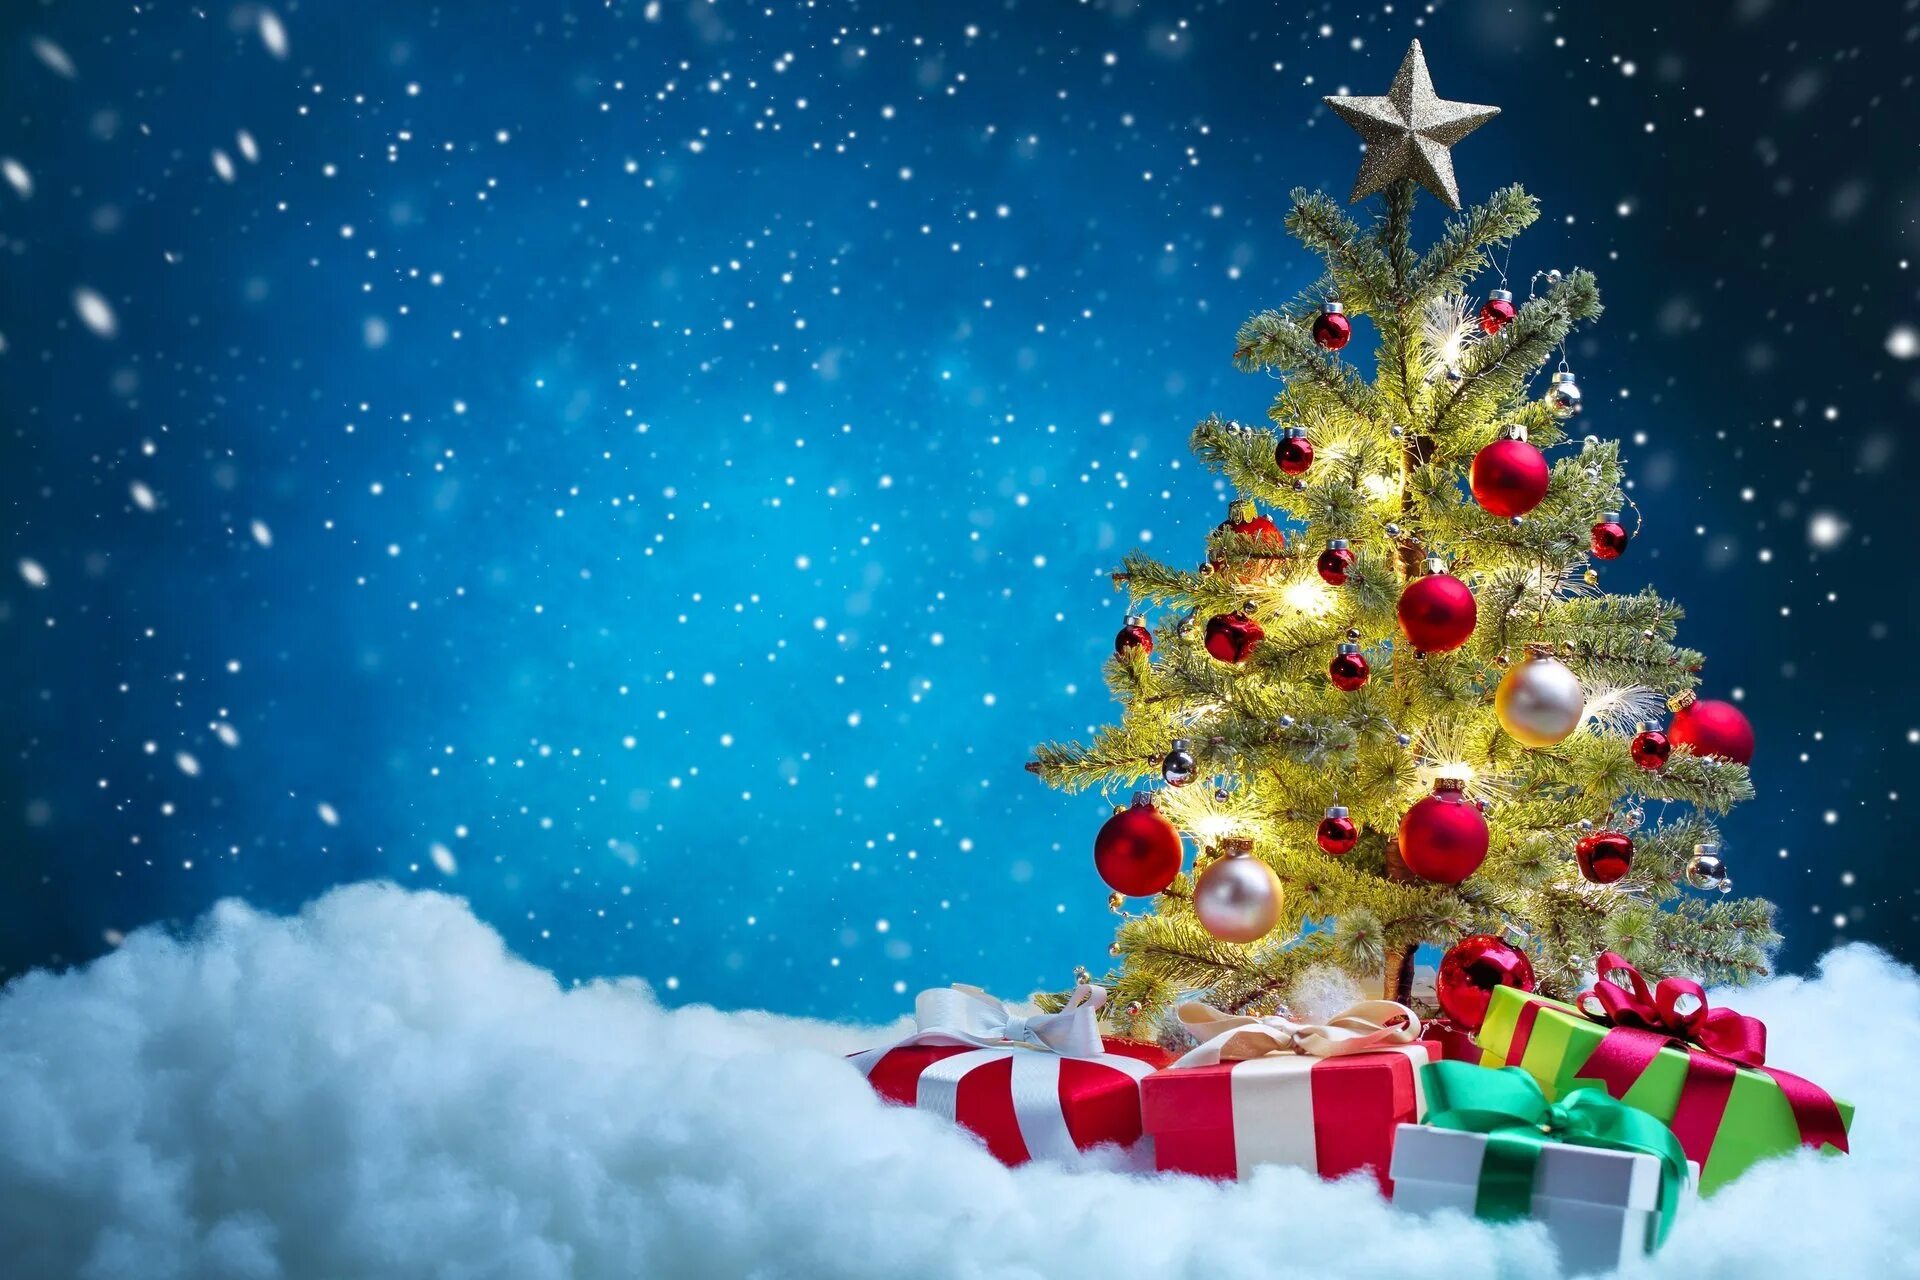 Новый год 2019 г. Новогодняя елка. Подарки для елки. Новогодняя елка с подарками. С новым годом и Рождеств.